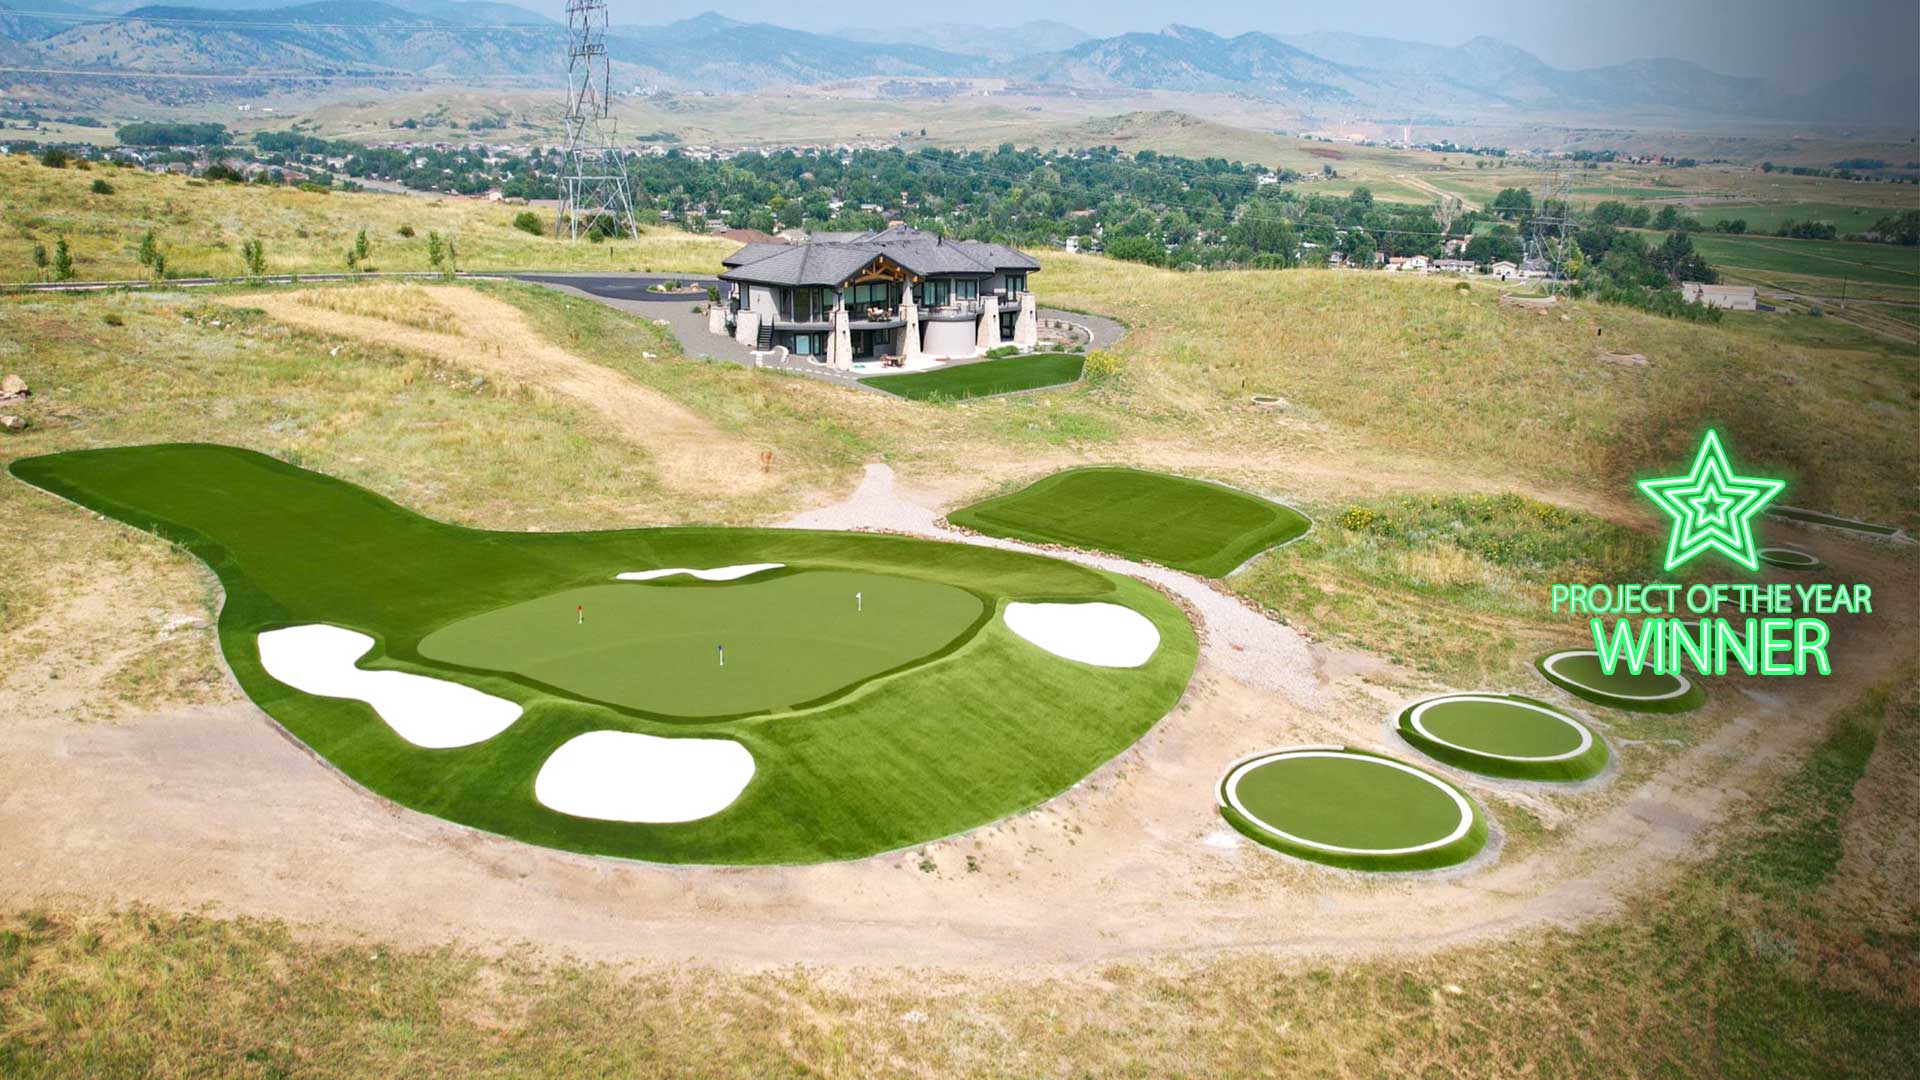 Il campo da golf residenziale del Colorado riceve il riconoscimento del premio